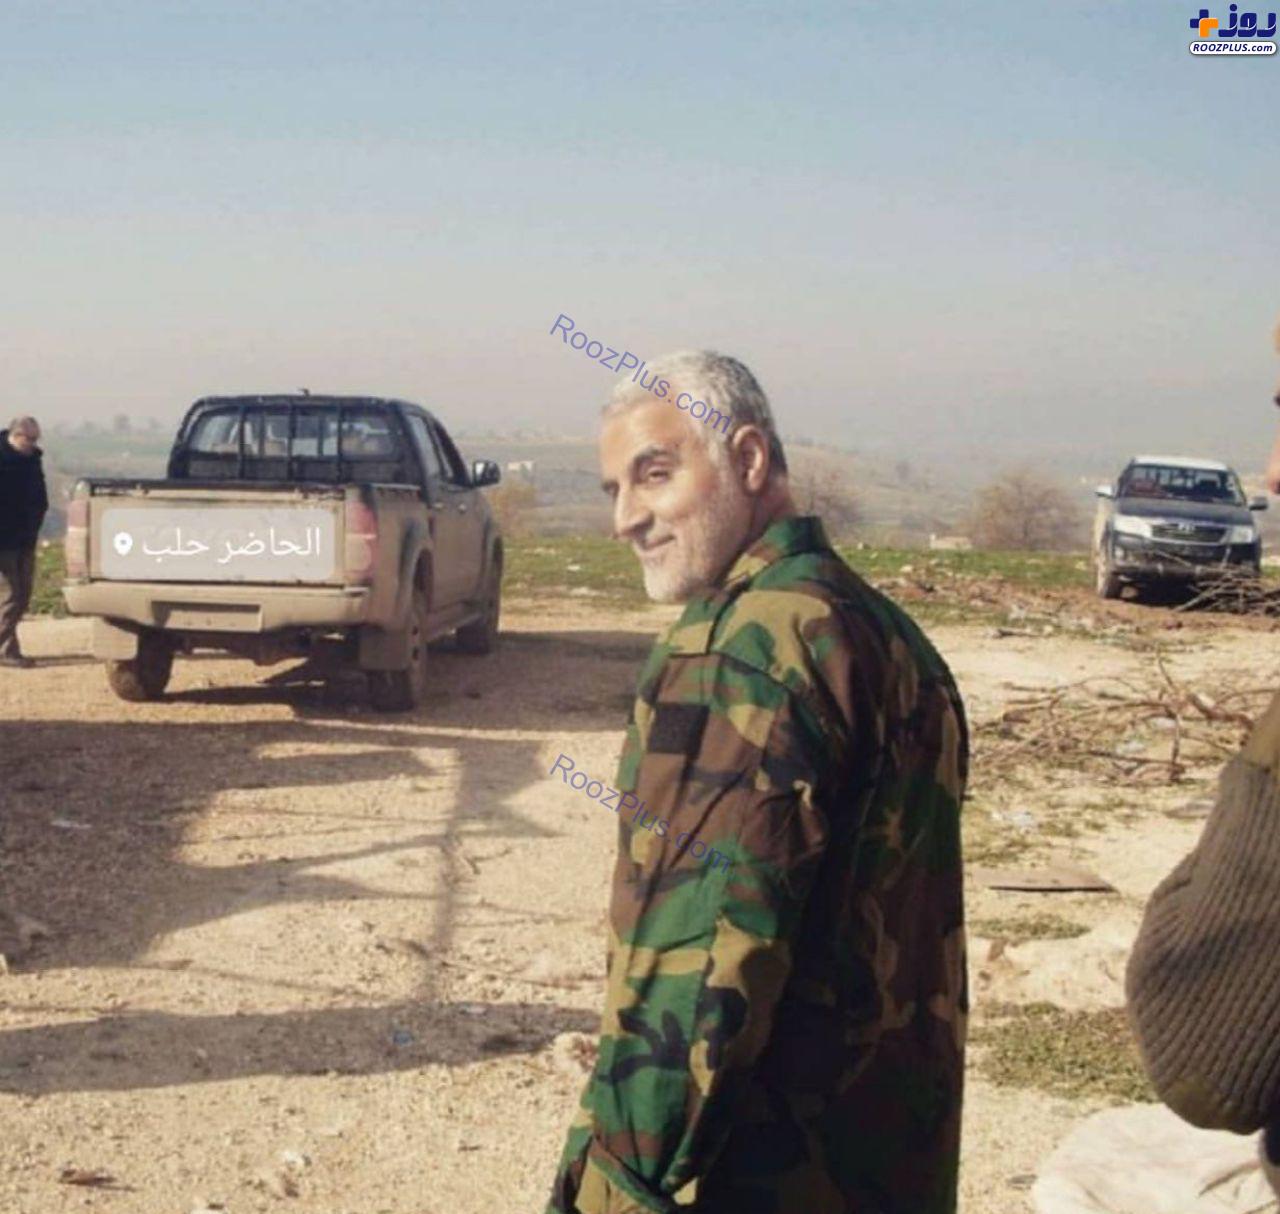 عکسی کمتر دیده شده از سردار شهید قاسم سلیمانی در سوریه